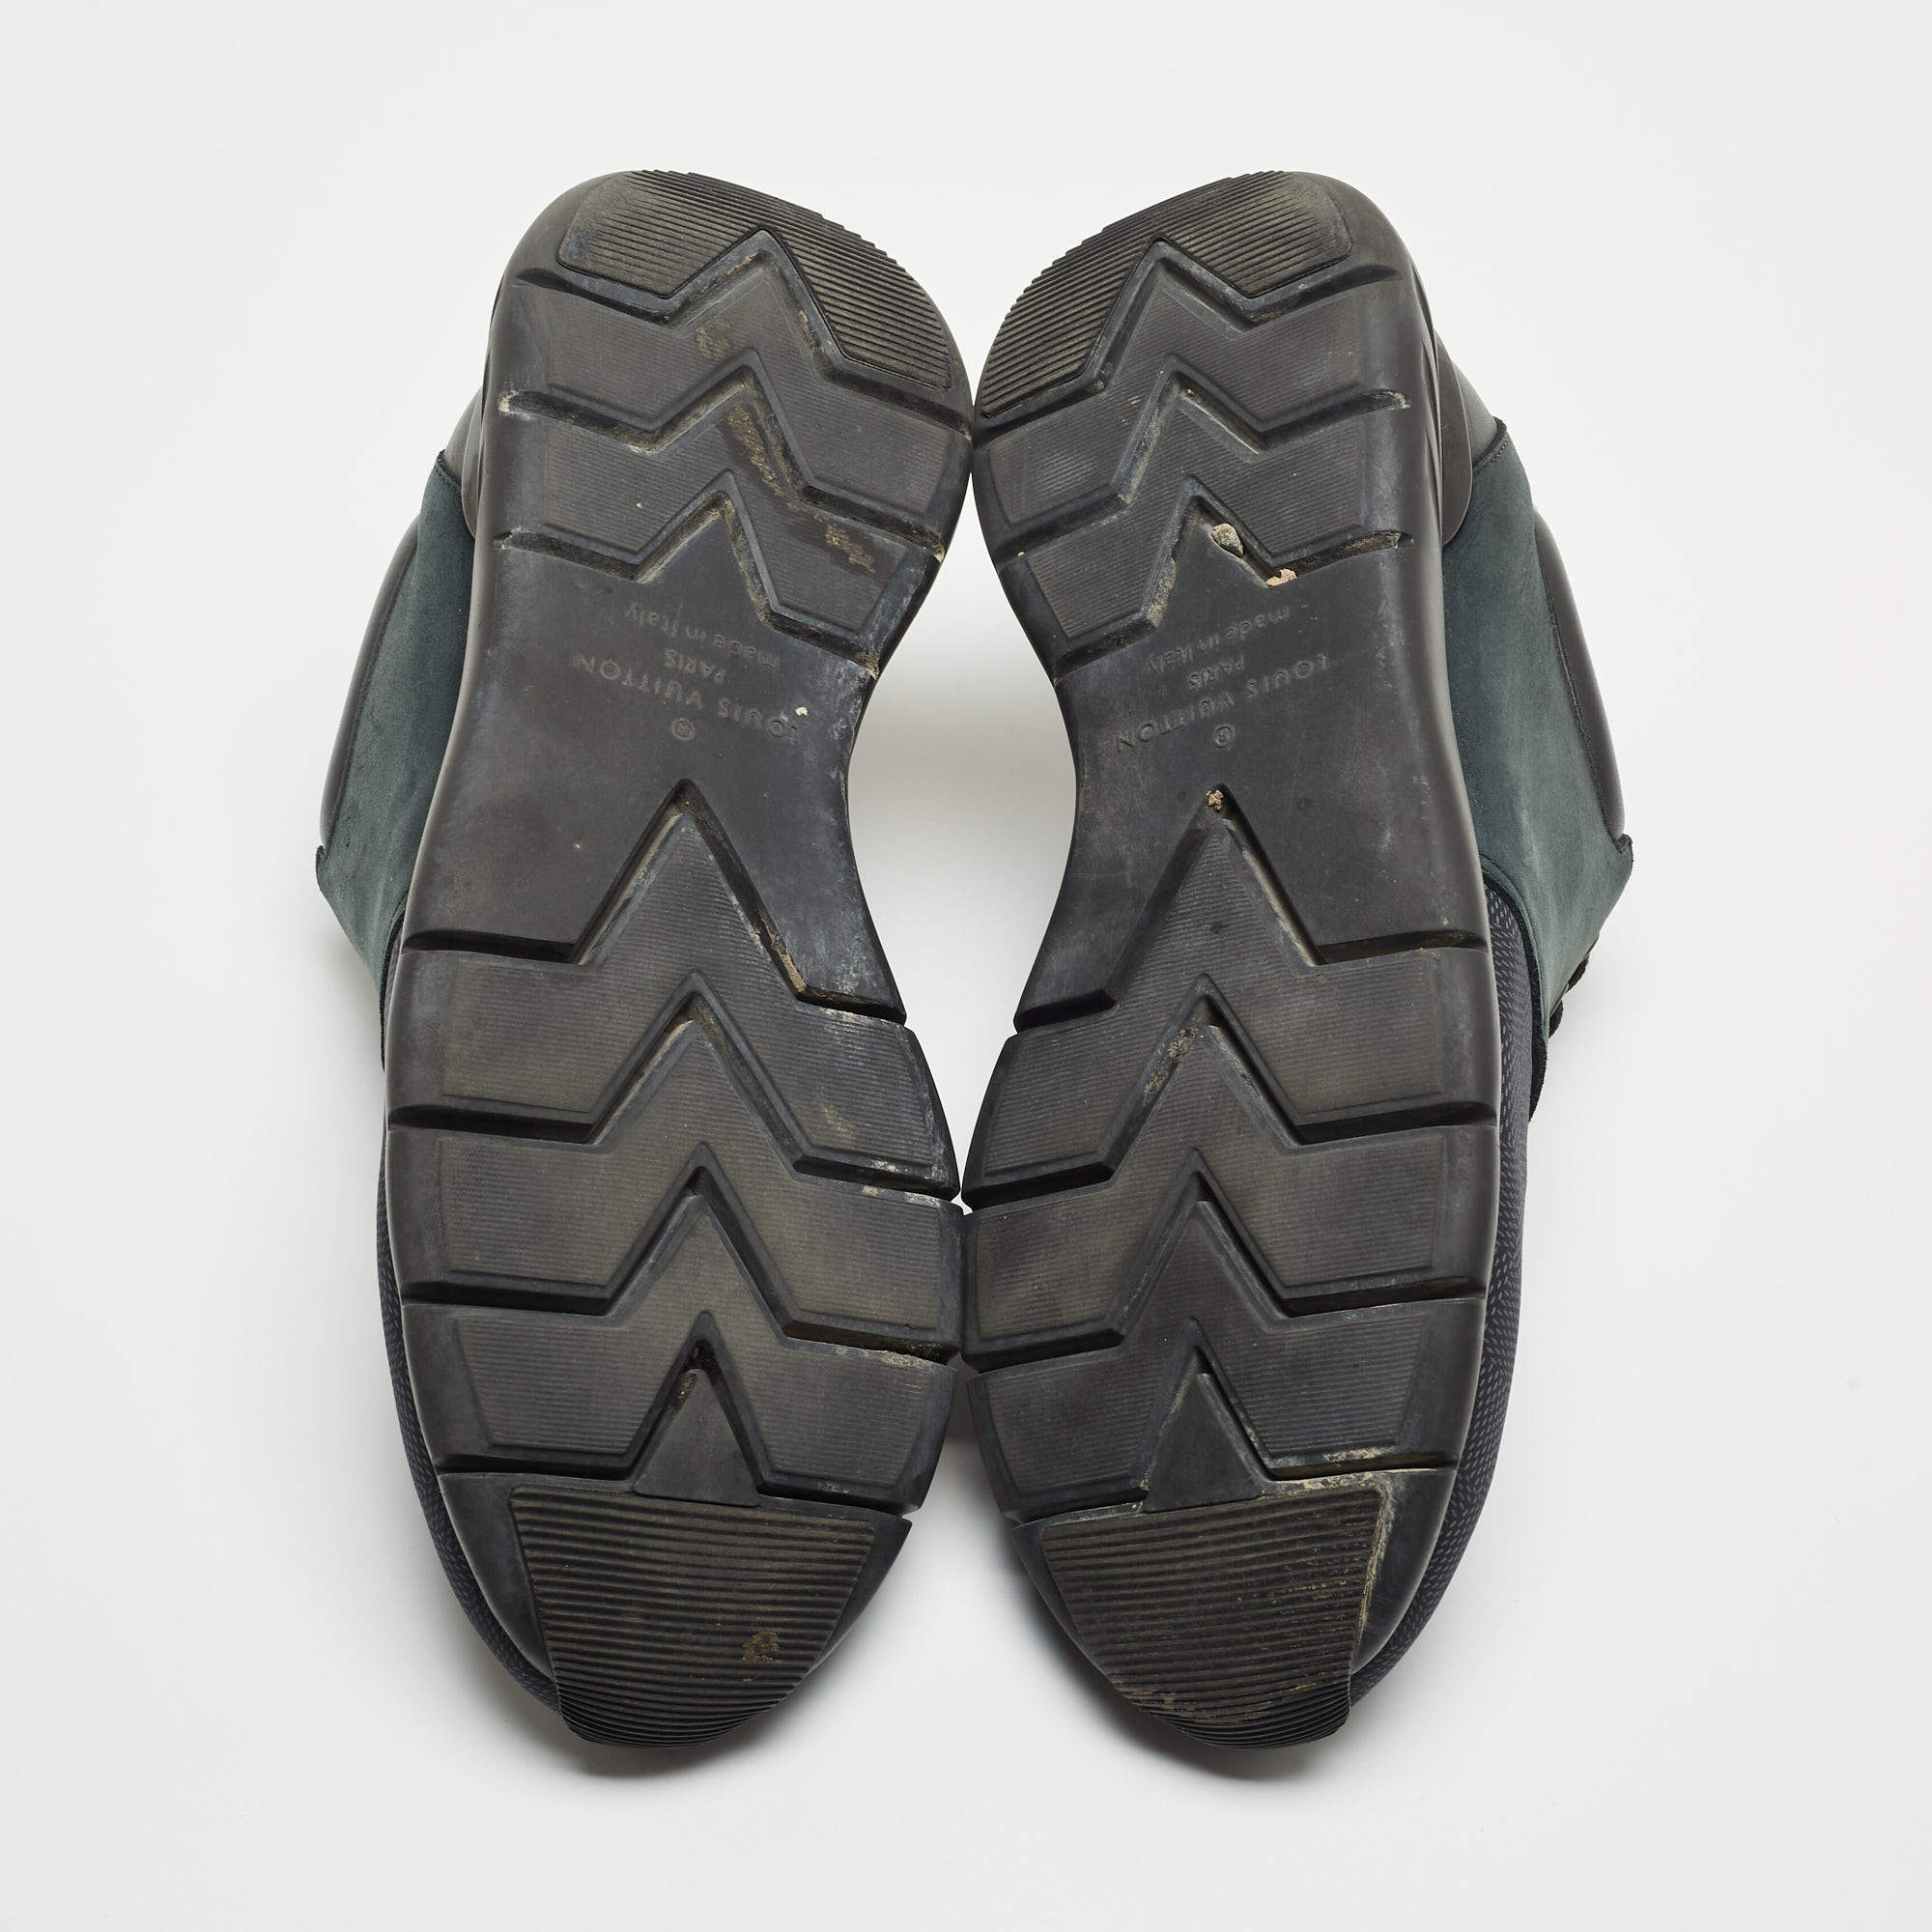 Louis Vuitton Fastlane Sneakers - Black Sneakers, Shoes - LOU766819